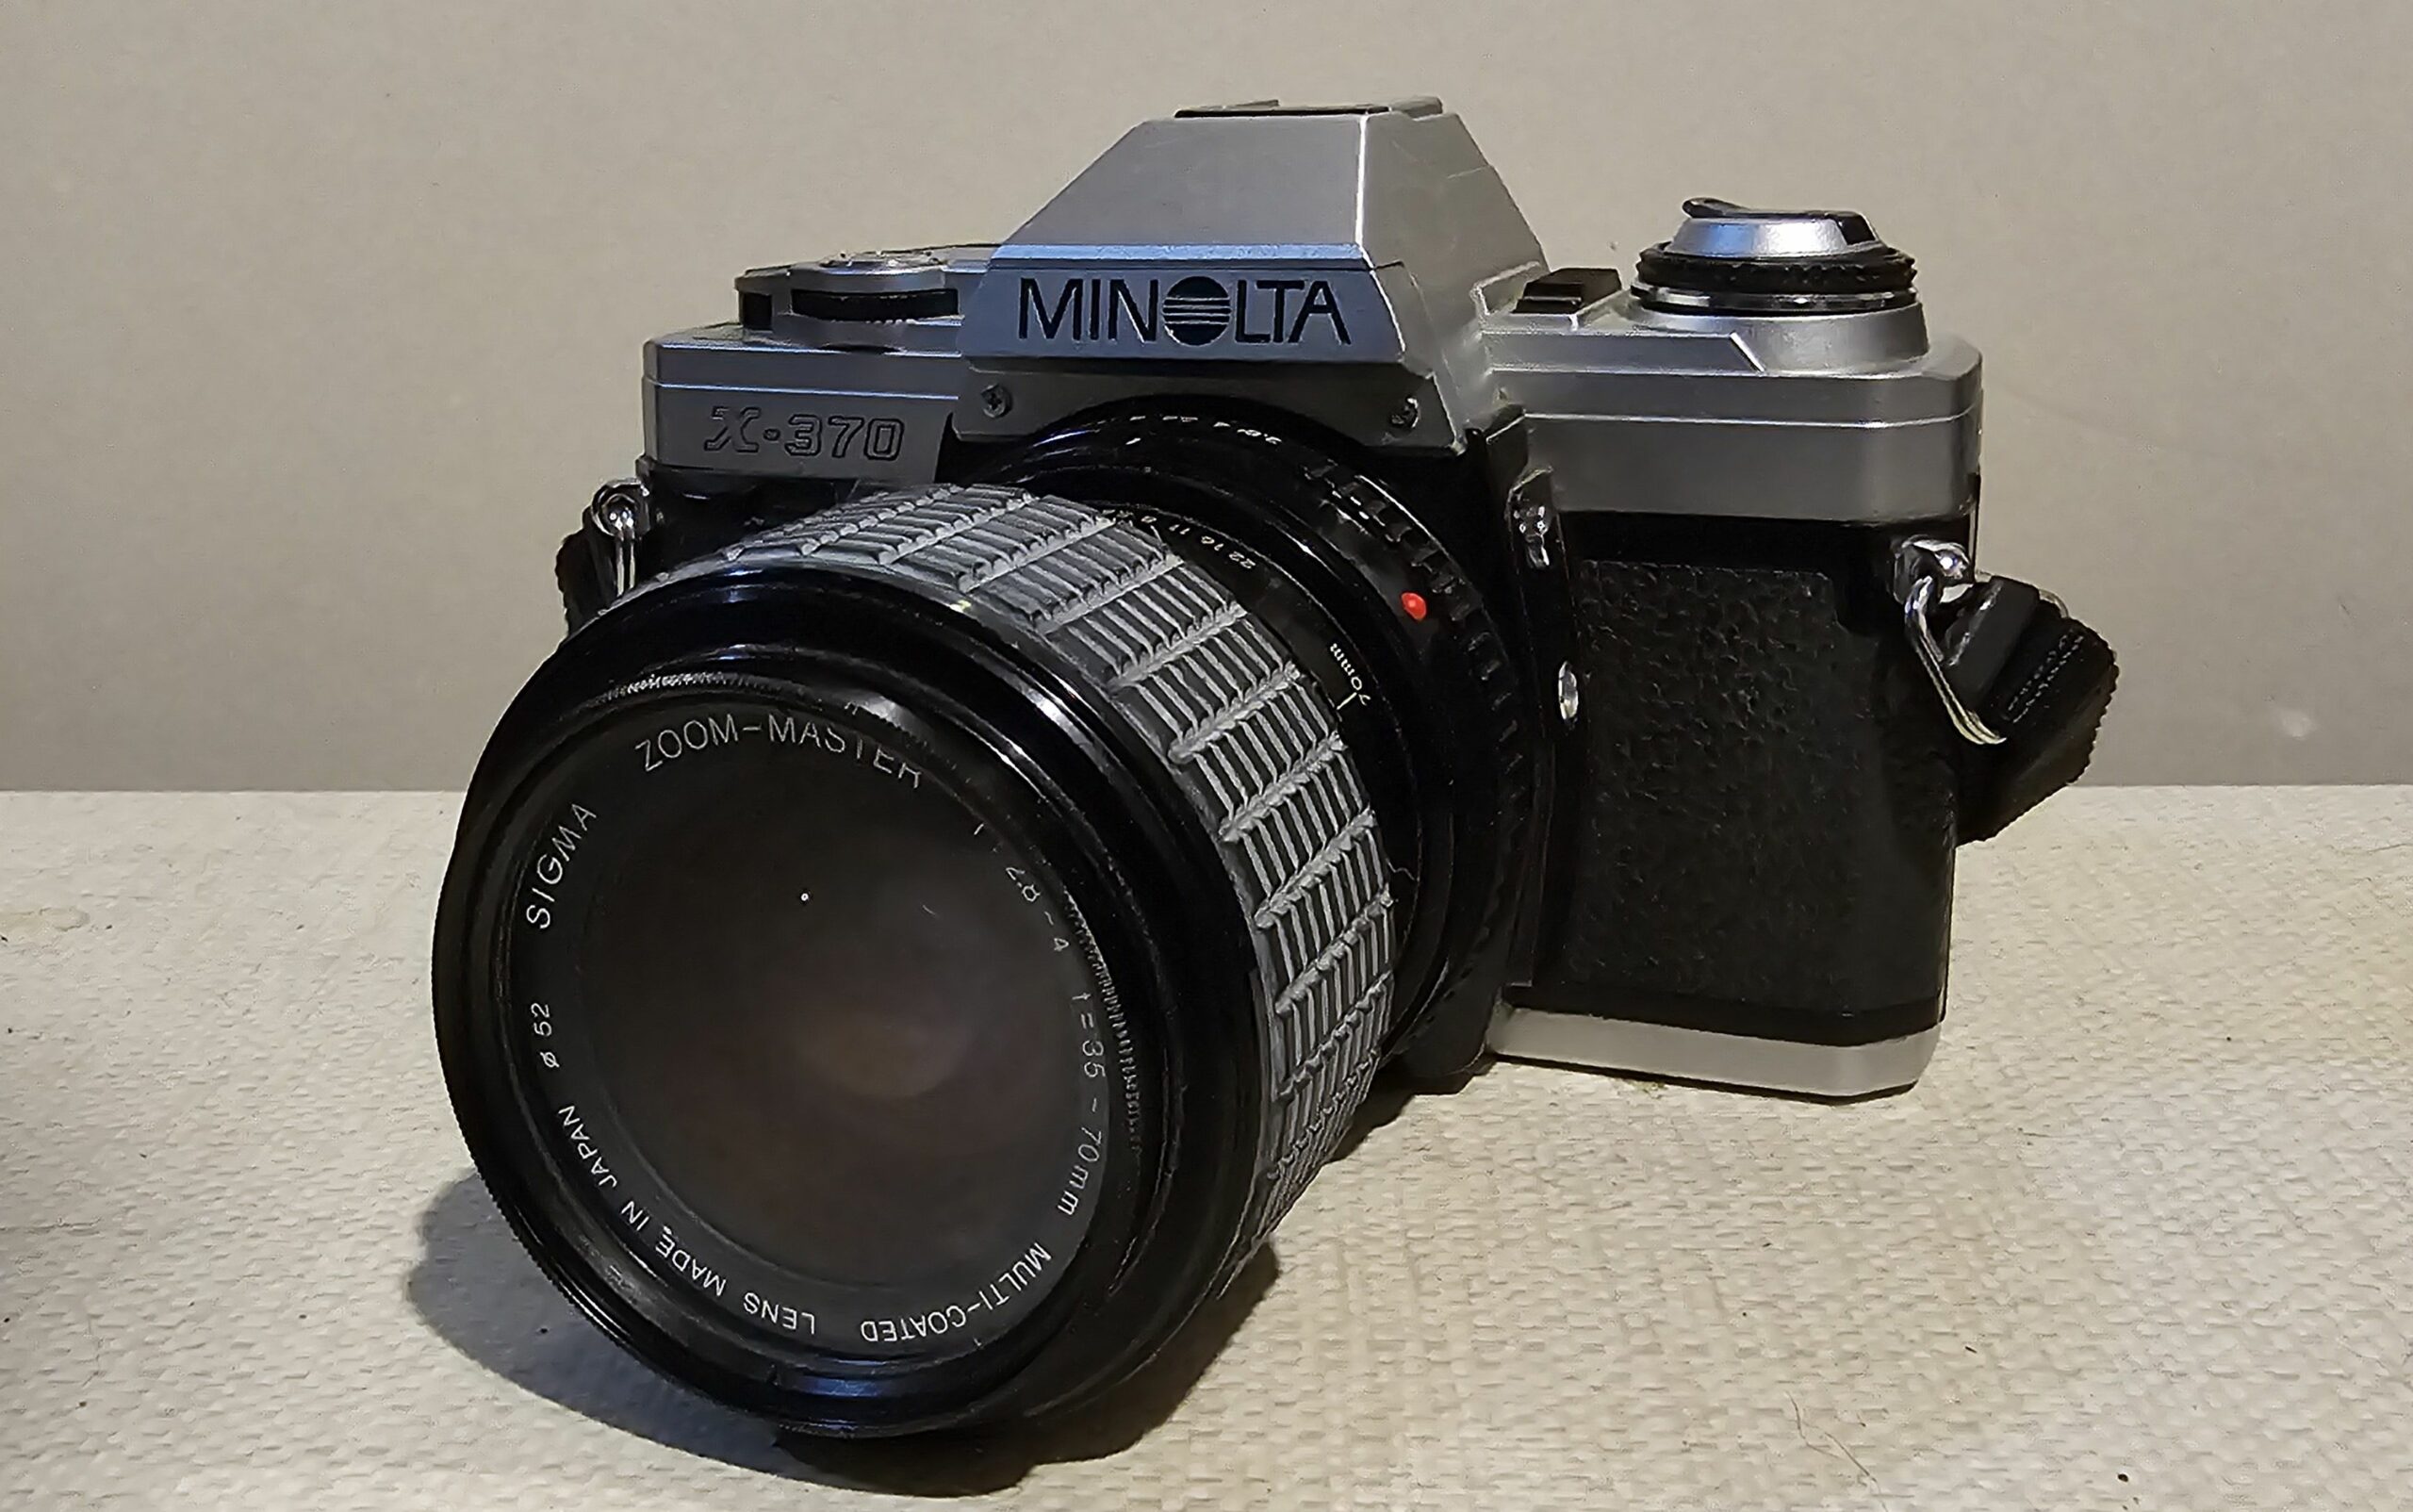 The Minolta X-370